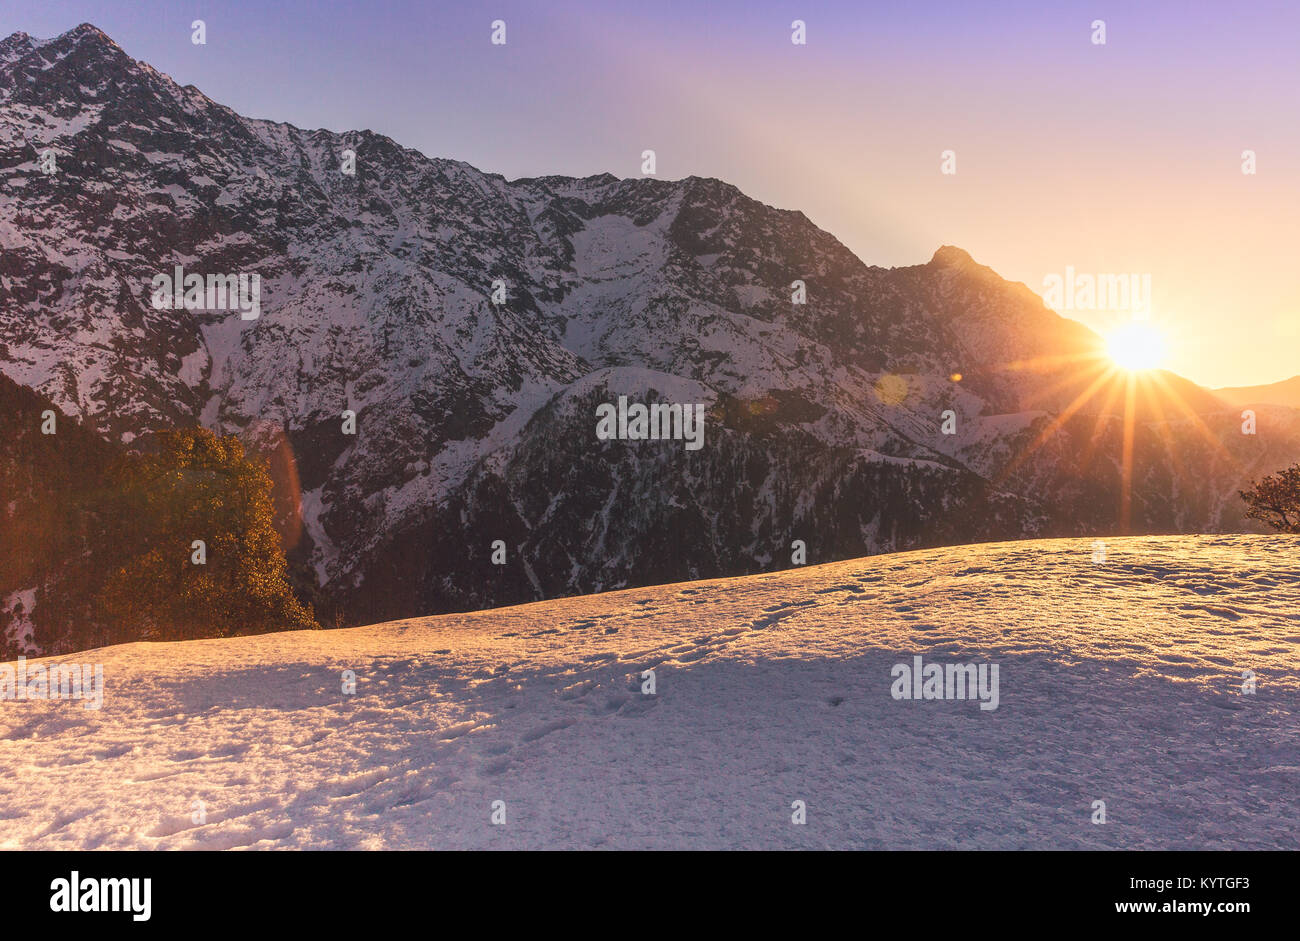 Sonne über schneebedeckte Berggipfel an Triund, Mcleod Ganj, Dharamsala, Himachal Pradesh, Indien. Lila/goldenen Reflexen der Morgenröte. Umgeben von schneebedeckten Stockfoto